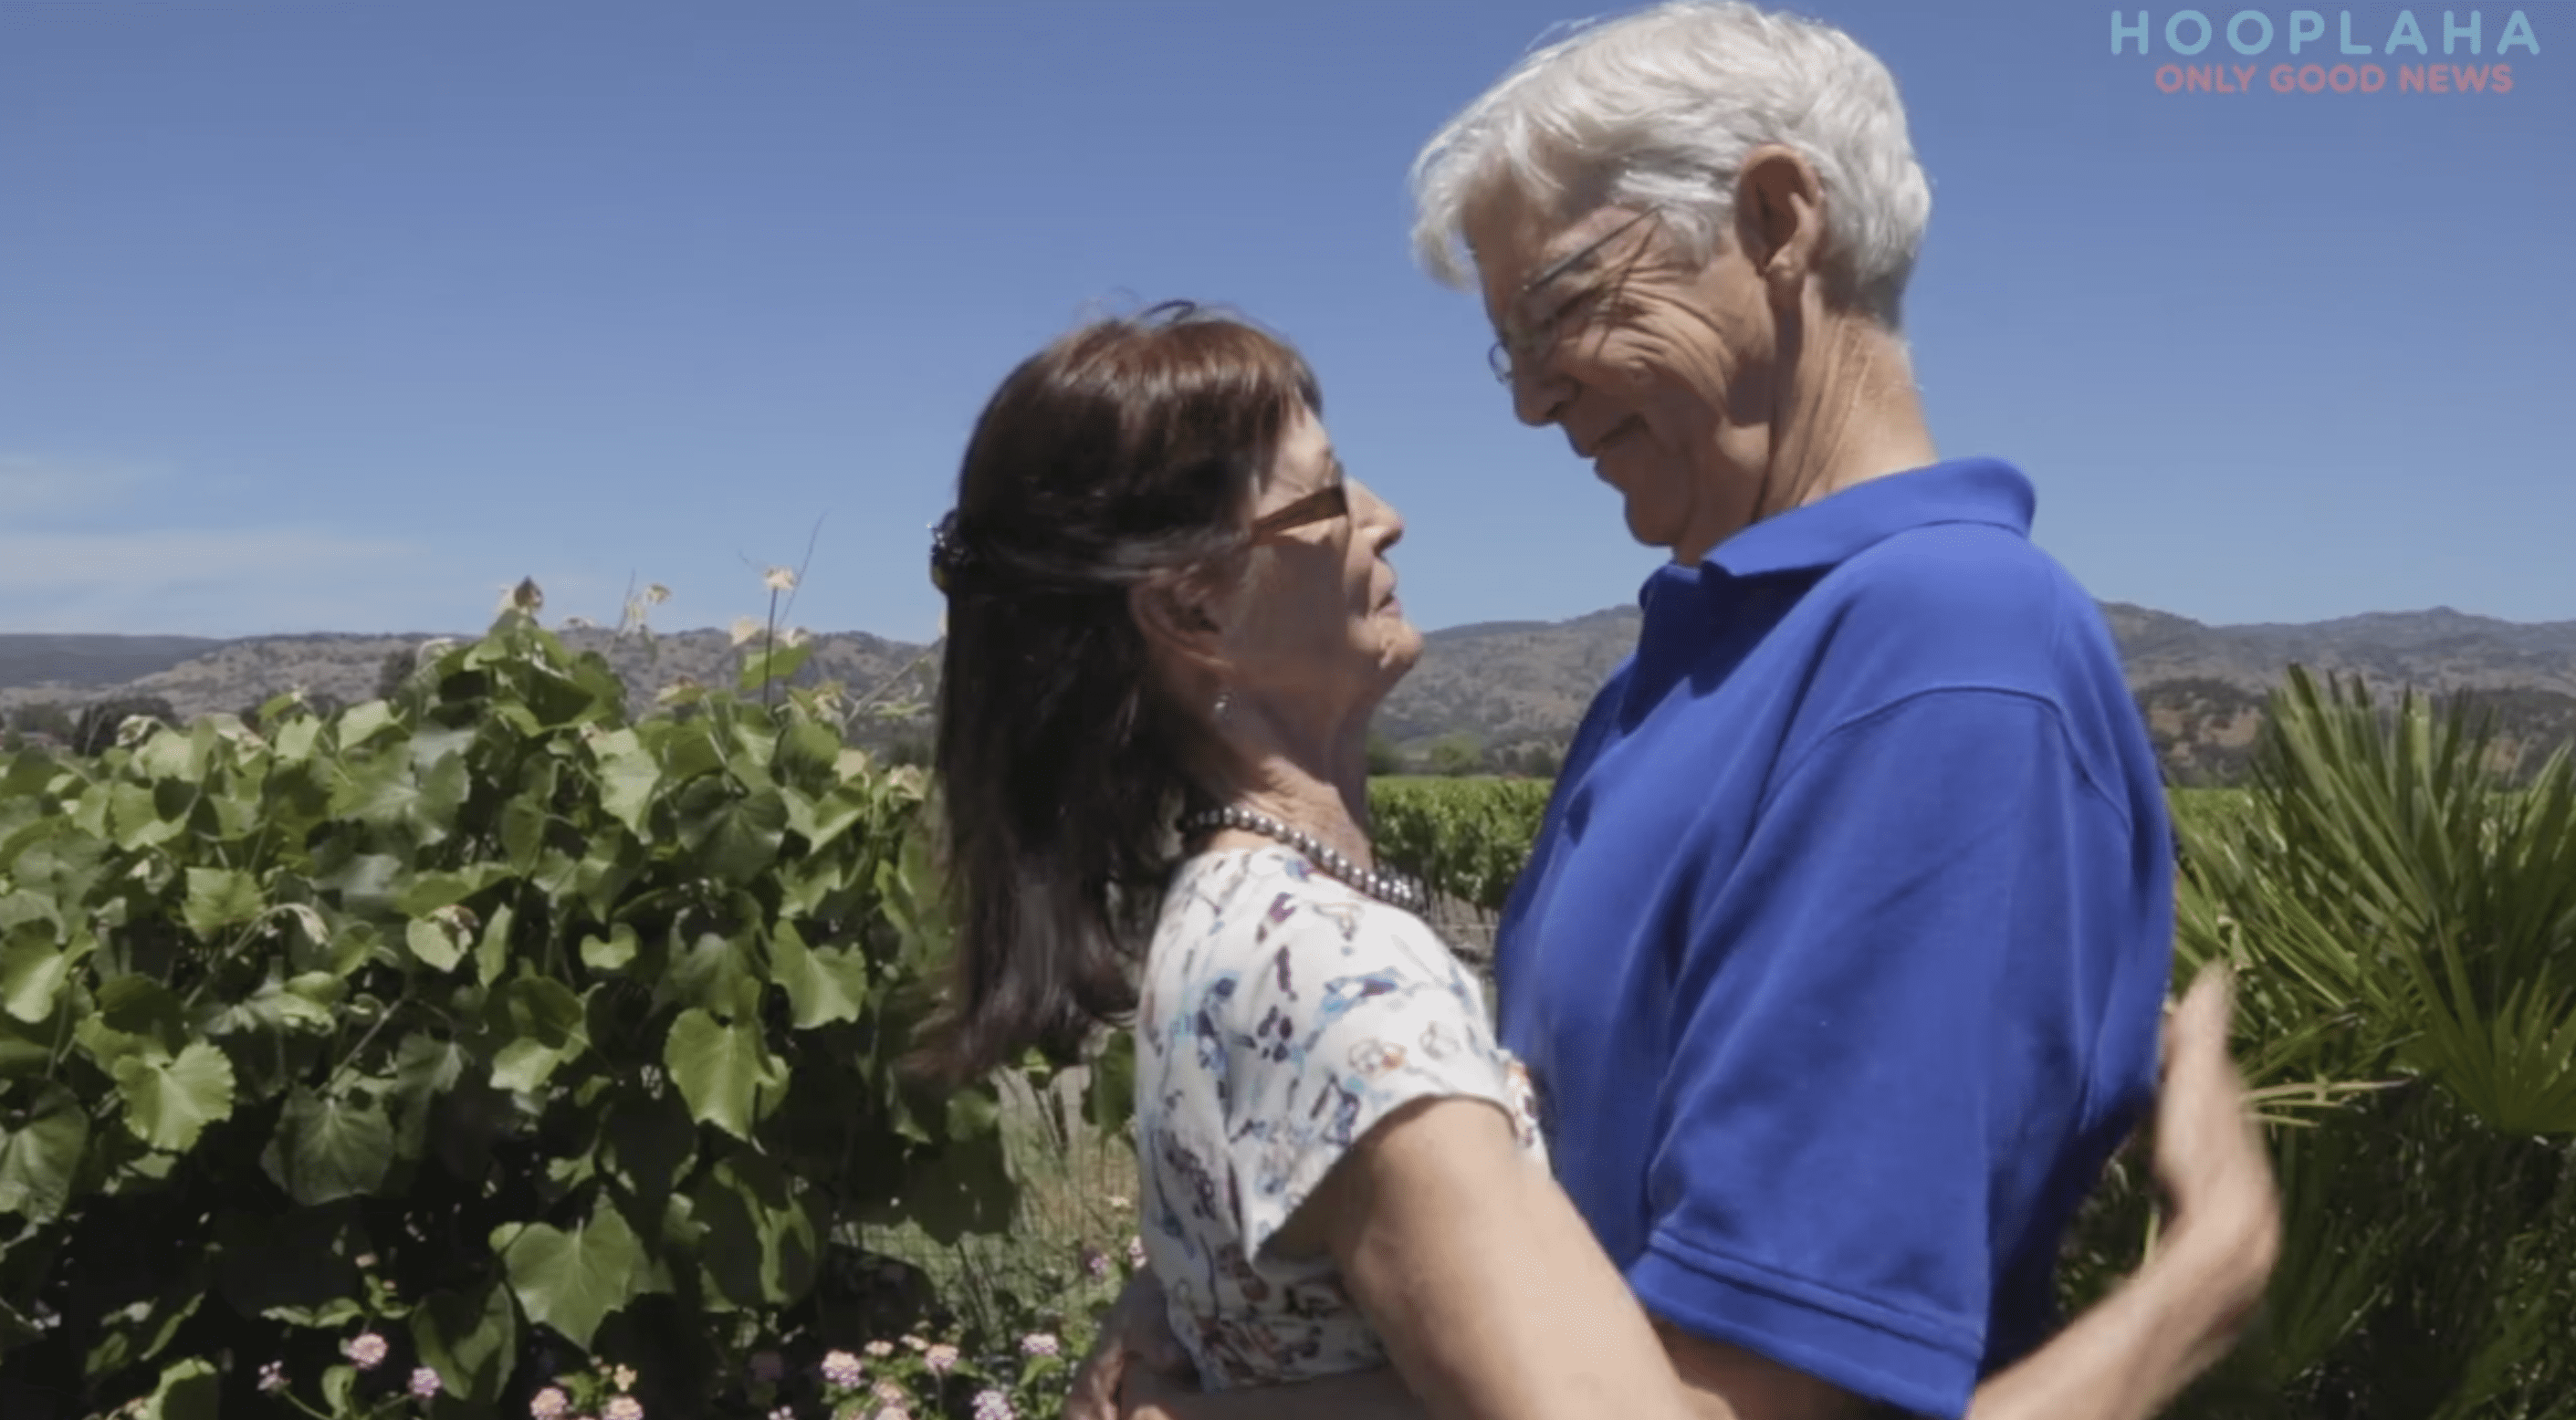 Les anciens amants se sont retrouvés après 48 ans, et ont découvert que leur amour était toujours intact. | Photo : YouTube.com/OnlyGood TV